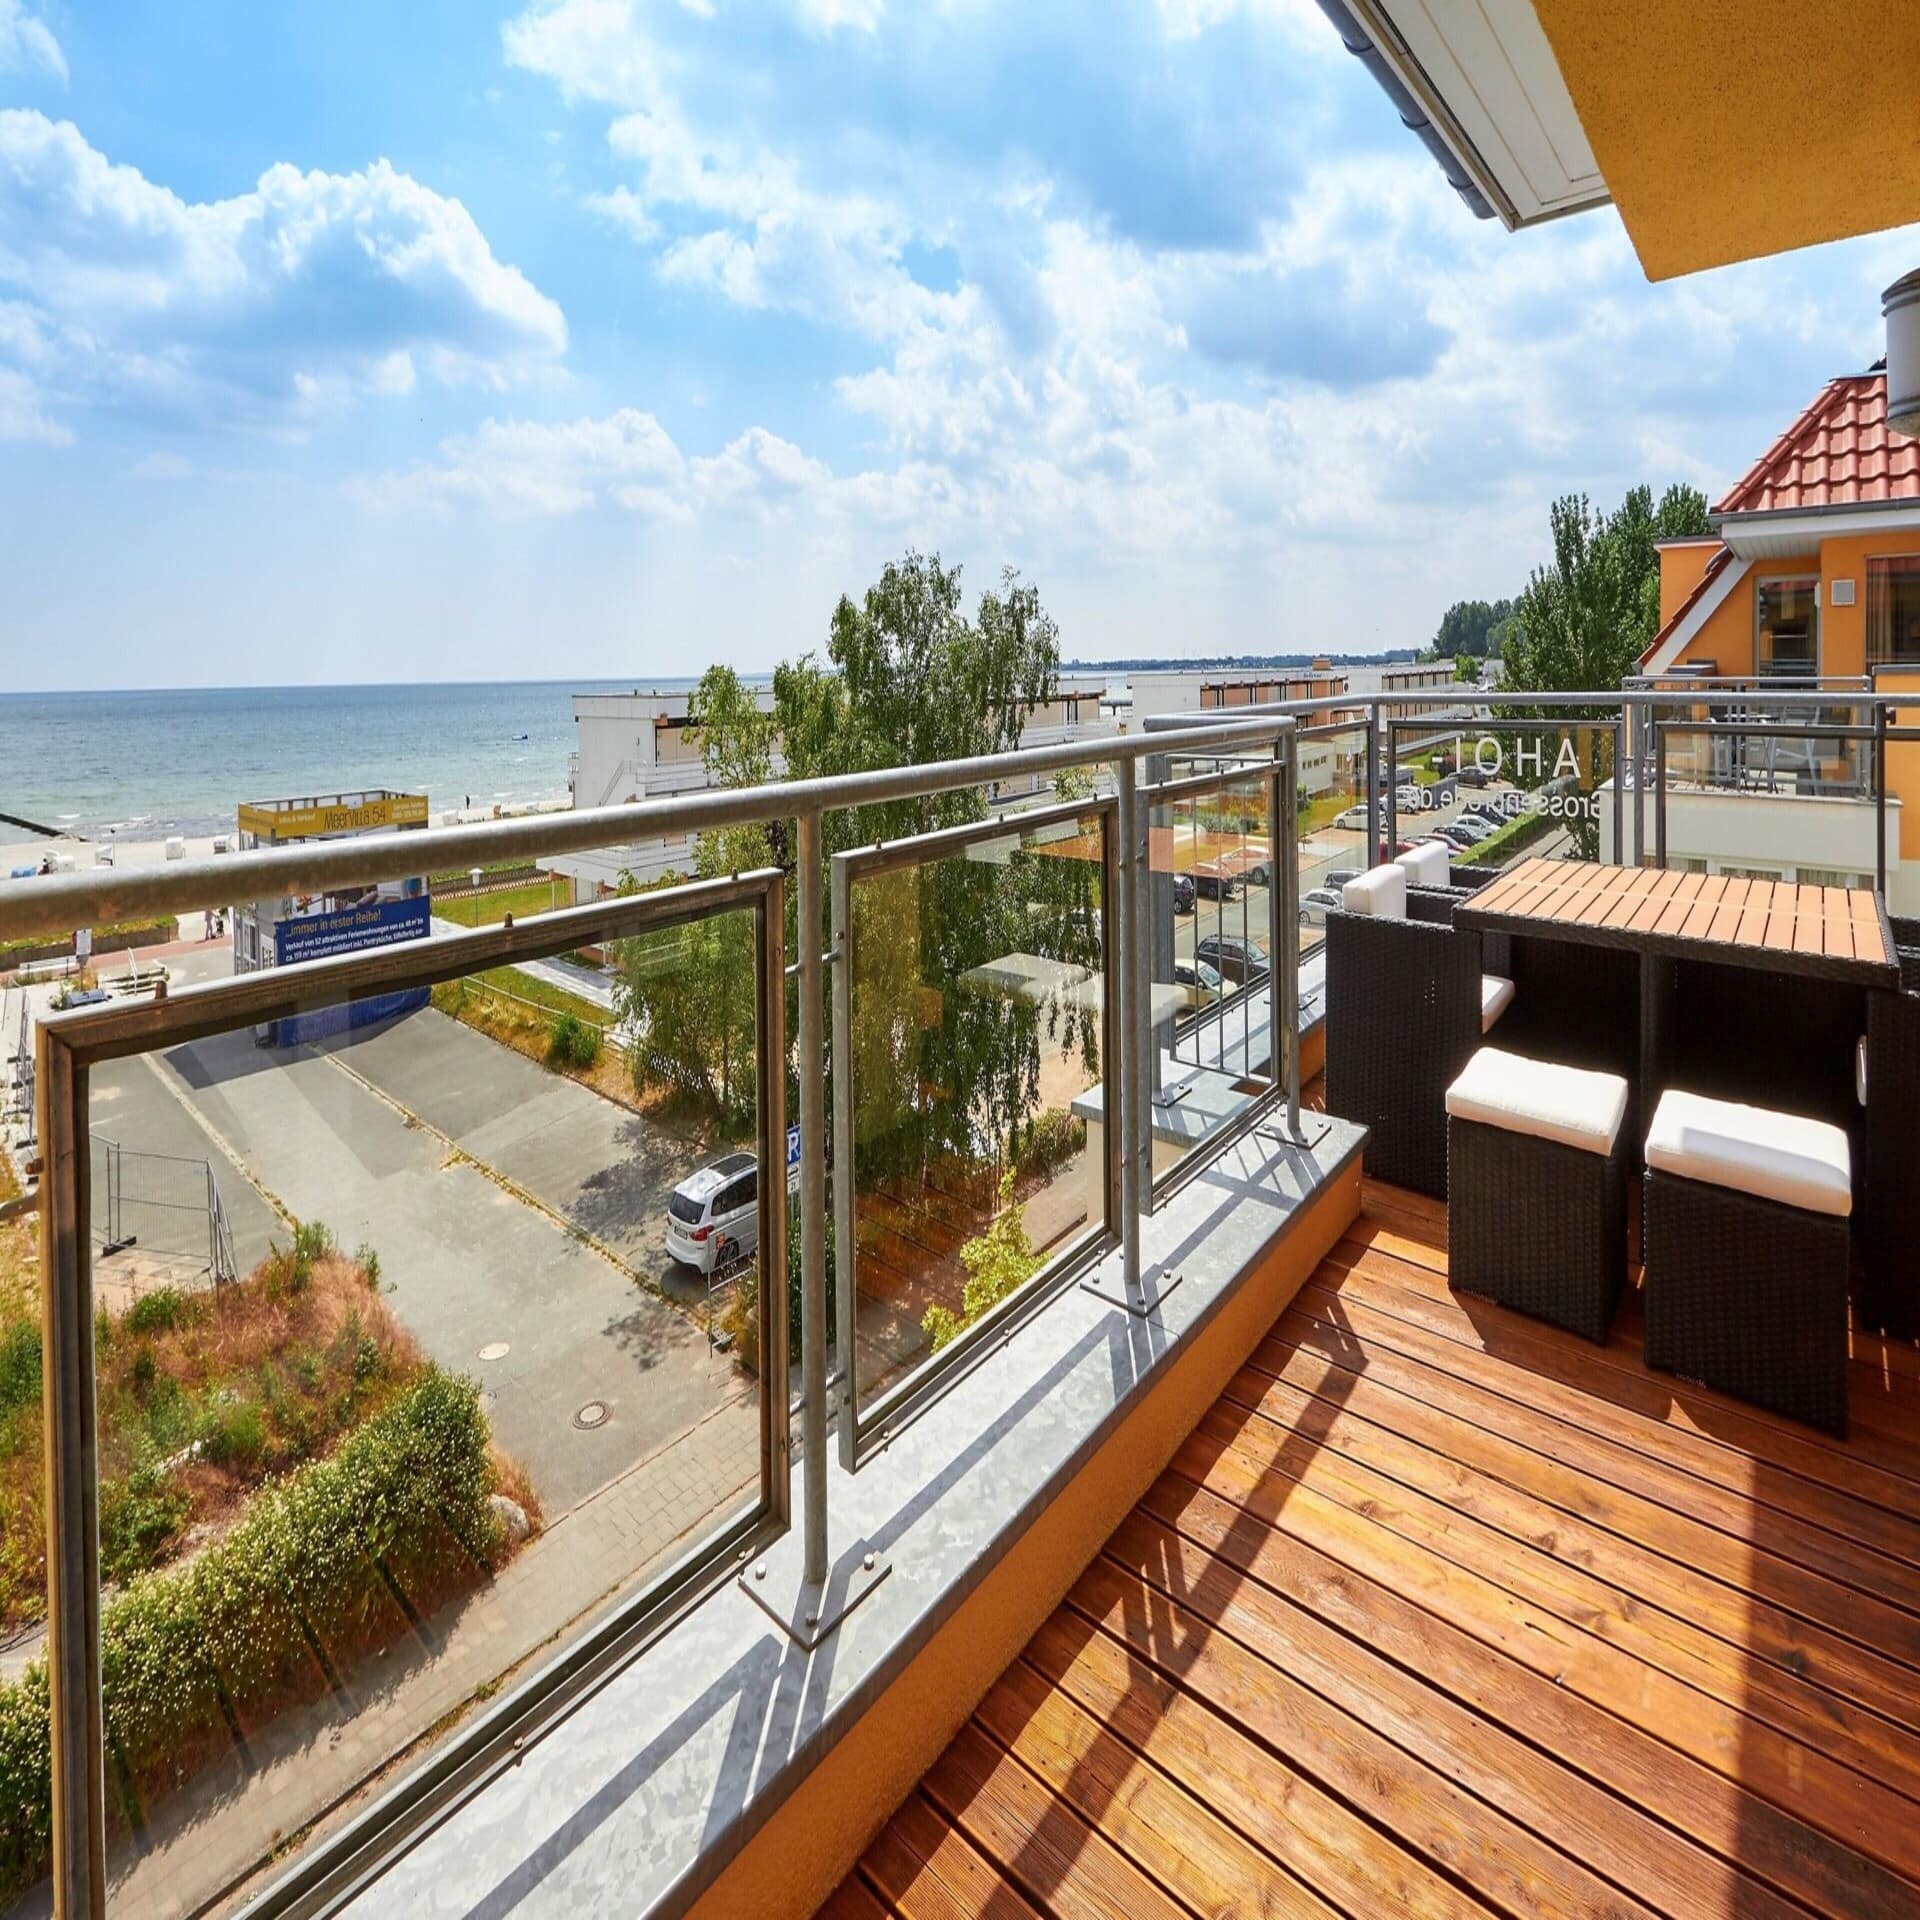 Balkon mit Glasbalustrade und Blick auf die Ostsee. Die Sonne scheint.